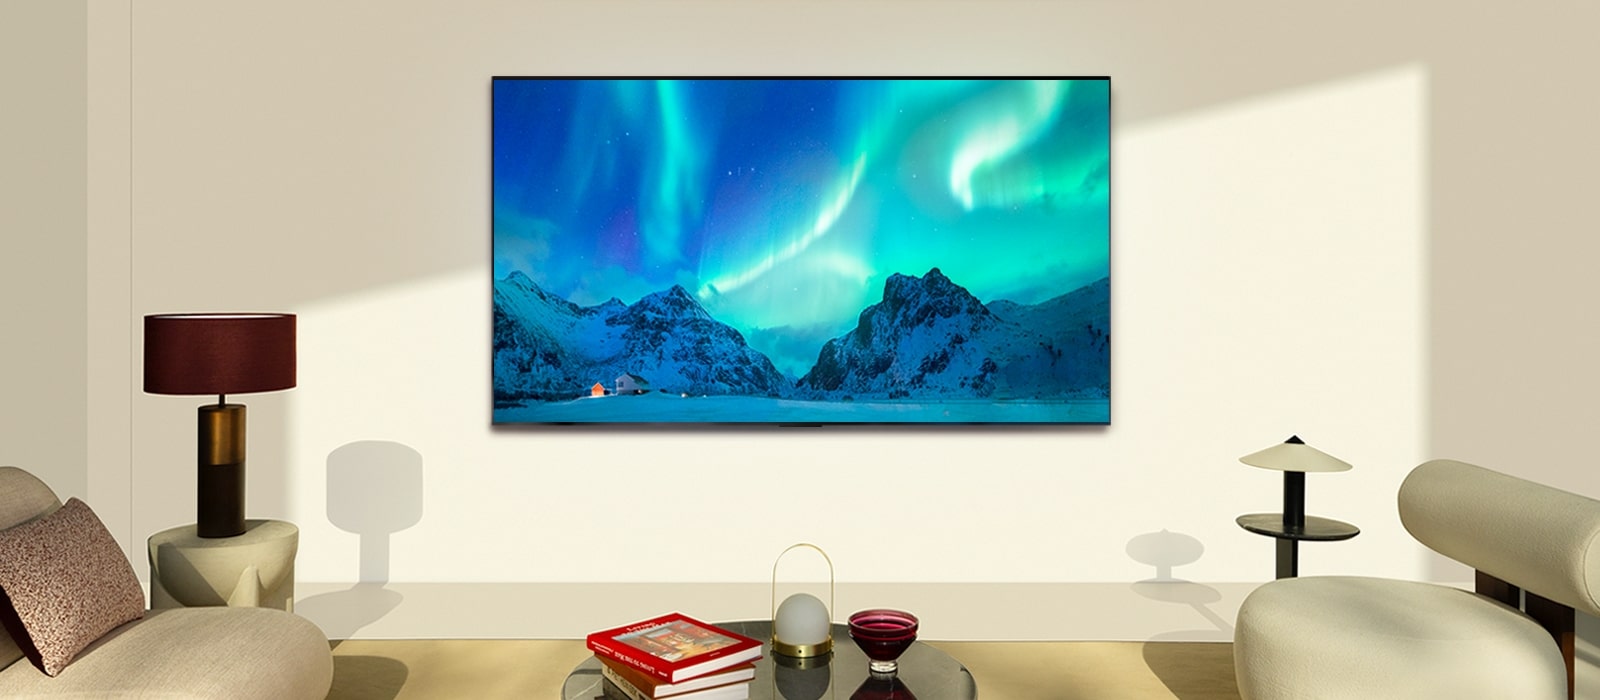 LG OLED TV într-un spațiu de locuit modern în timpul zilei. Imaginea de pe ecran a aurorei boreale este afișată cu nivelurile ideale de luminozitate.